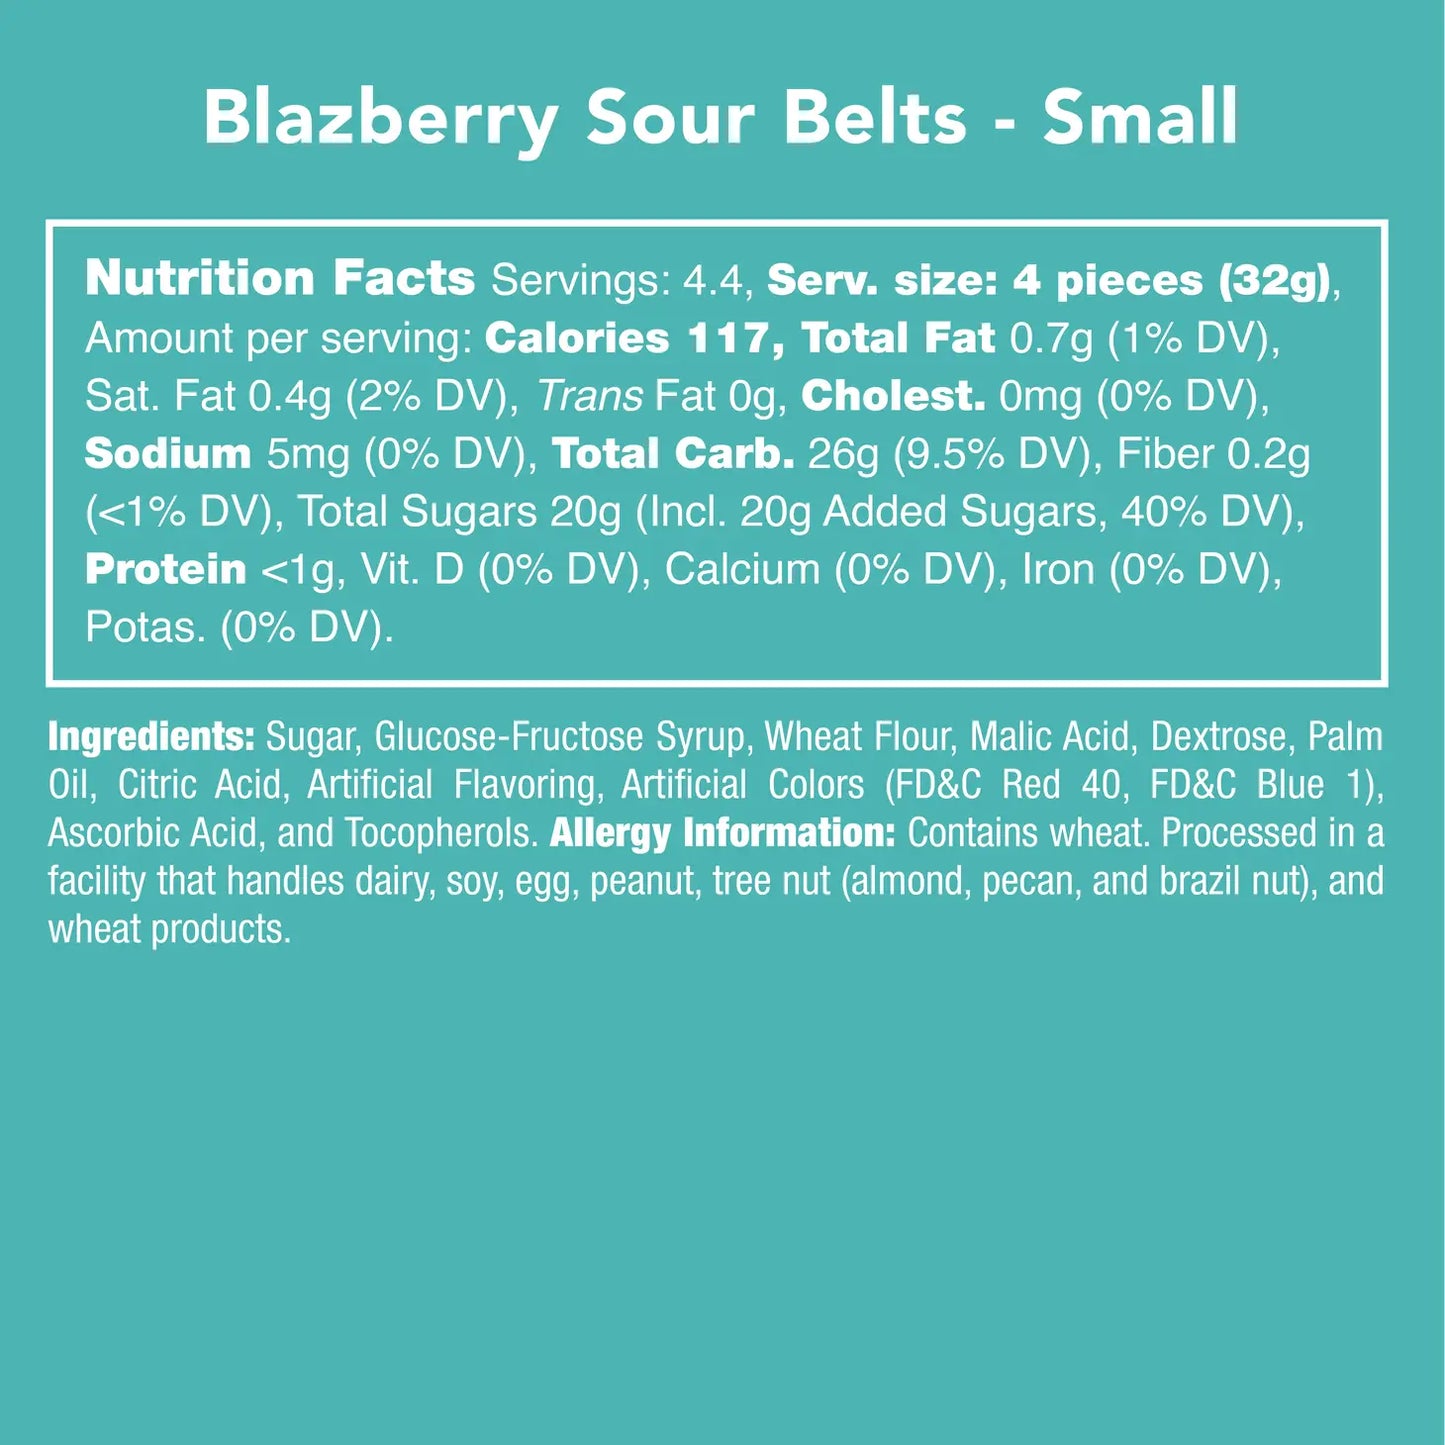 Blazberry Sour Belts